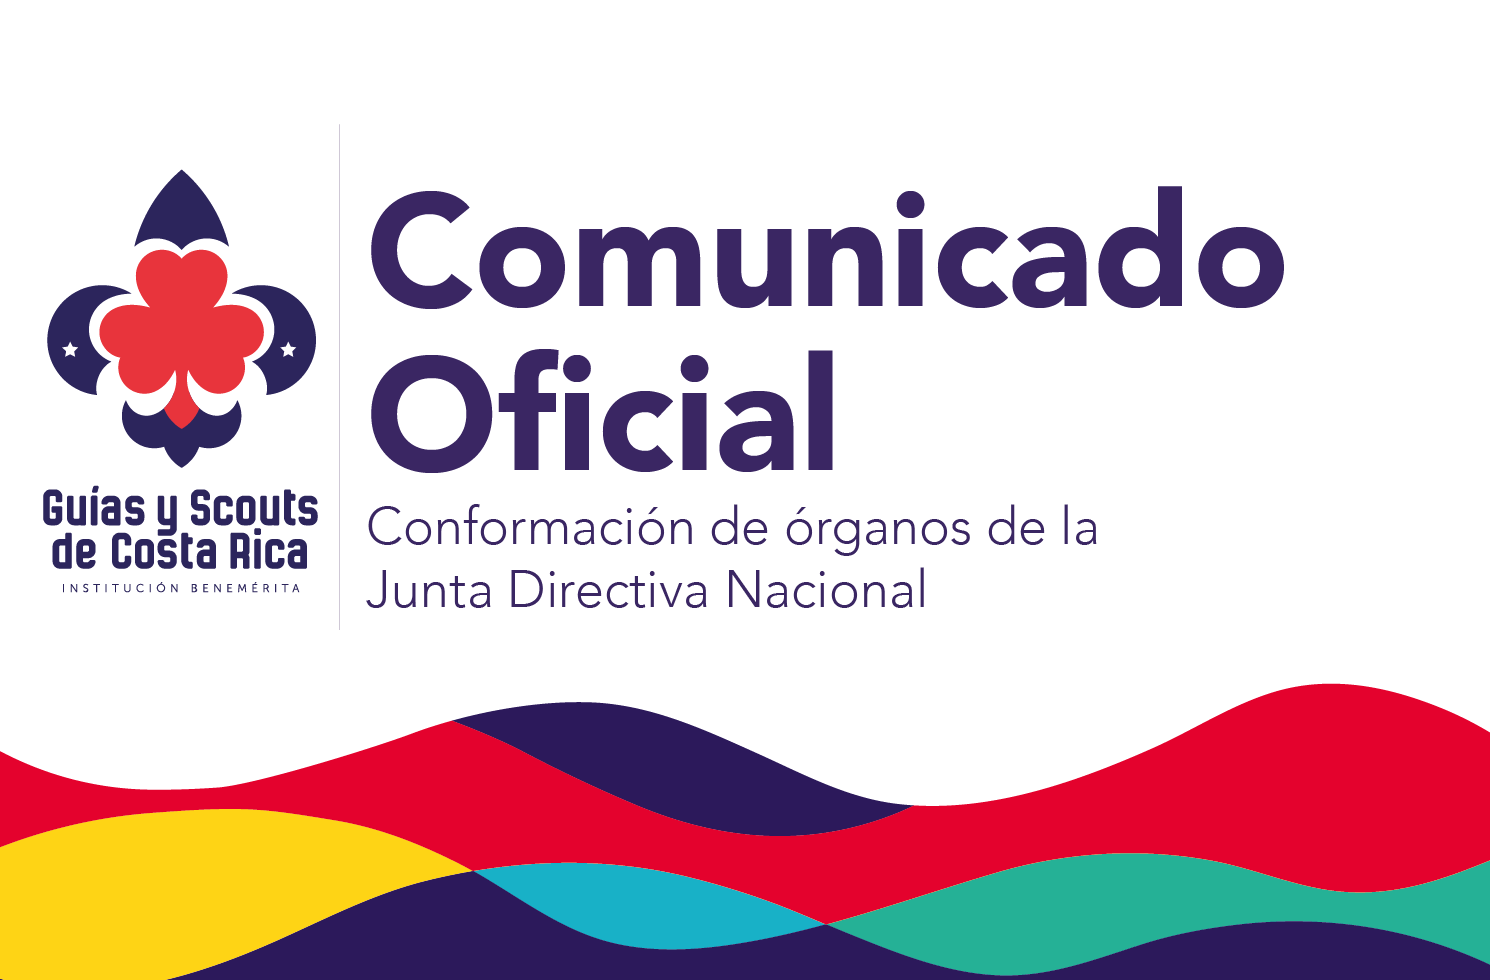 Comunicado oficial conformación de órganos de la Junta Directiva Nacional